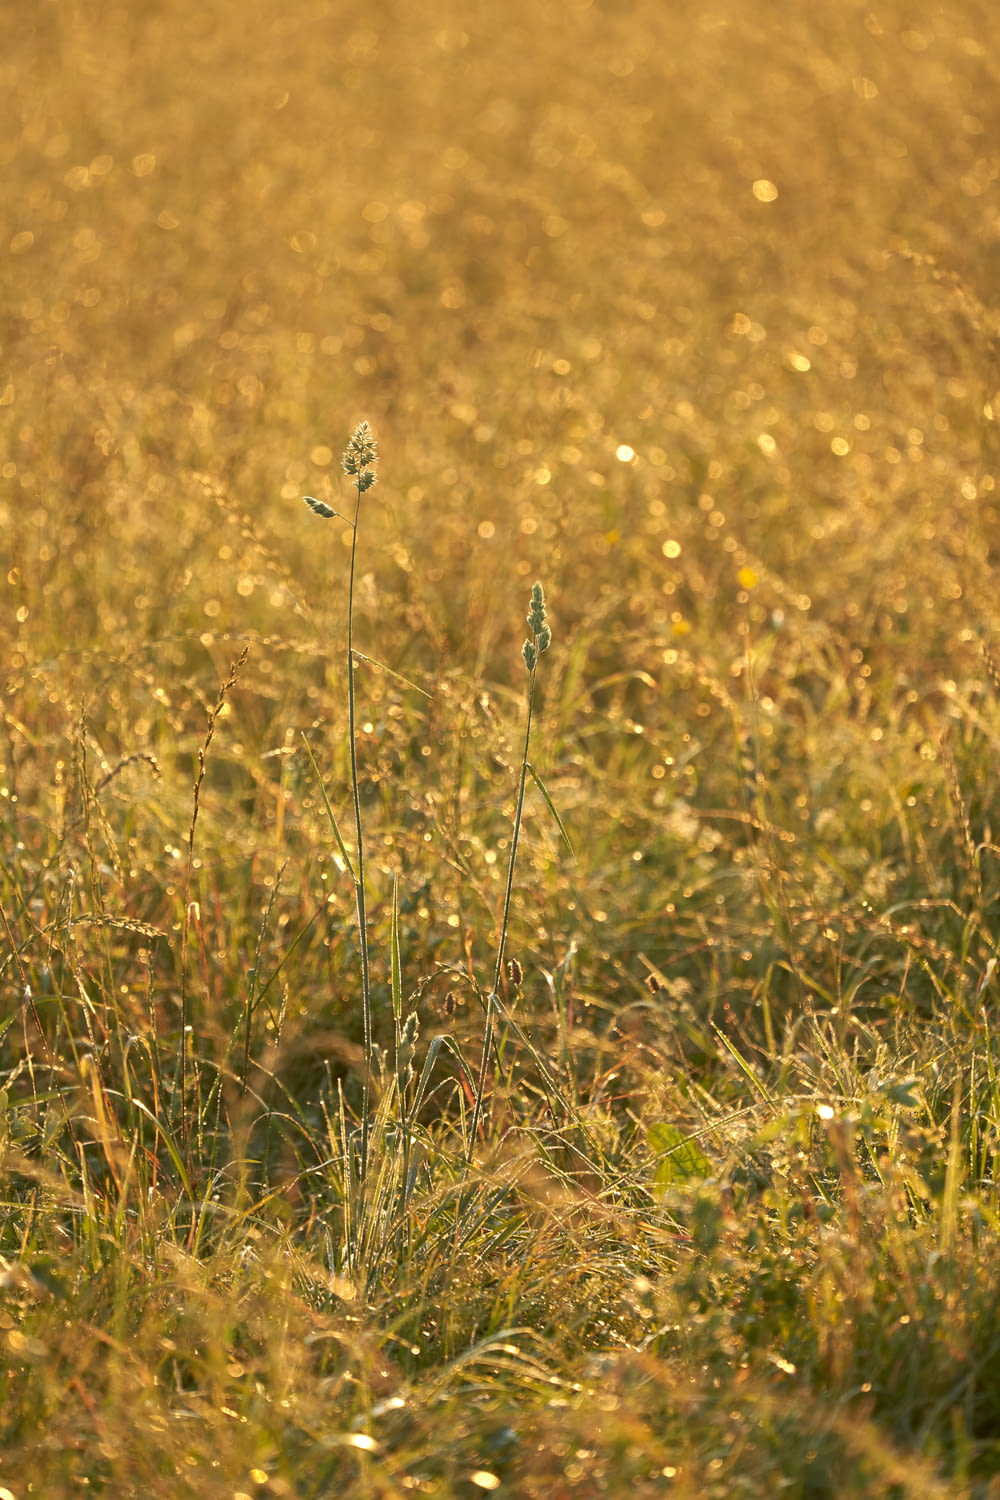 white dandelion on brown grass field during daytime